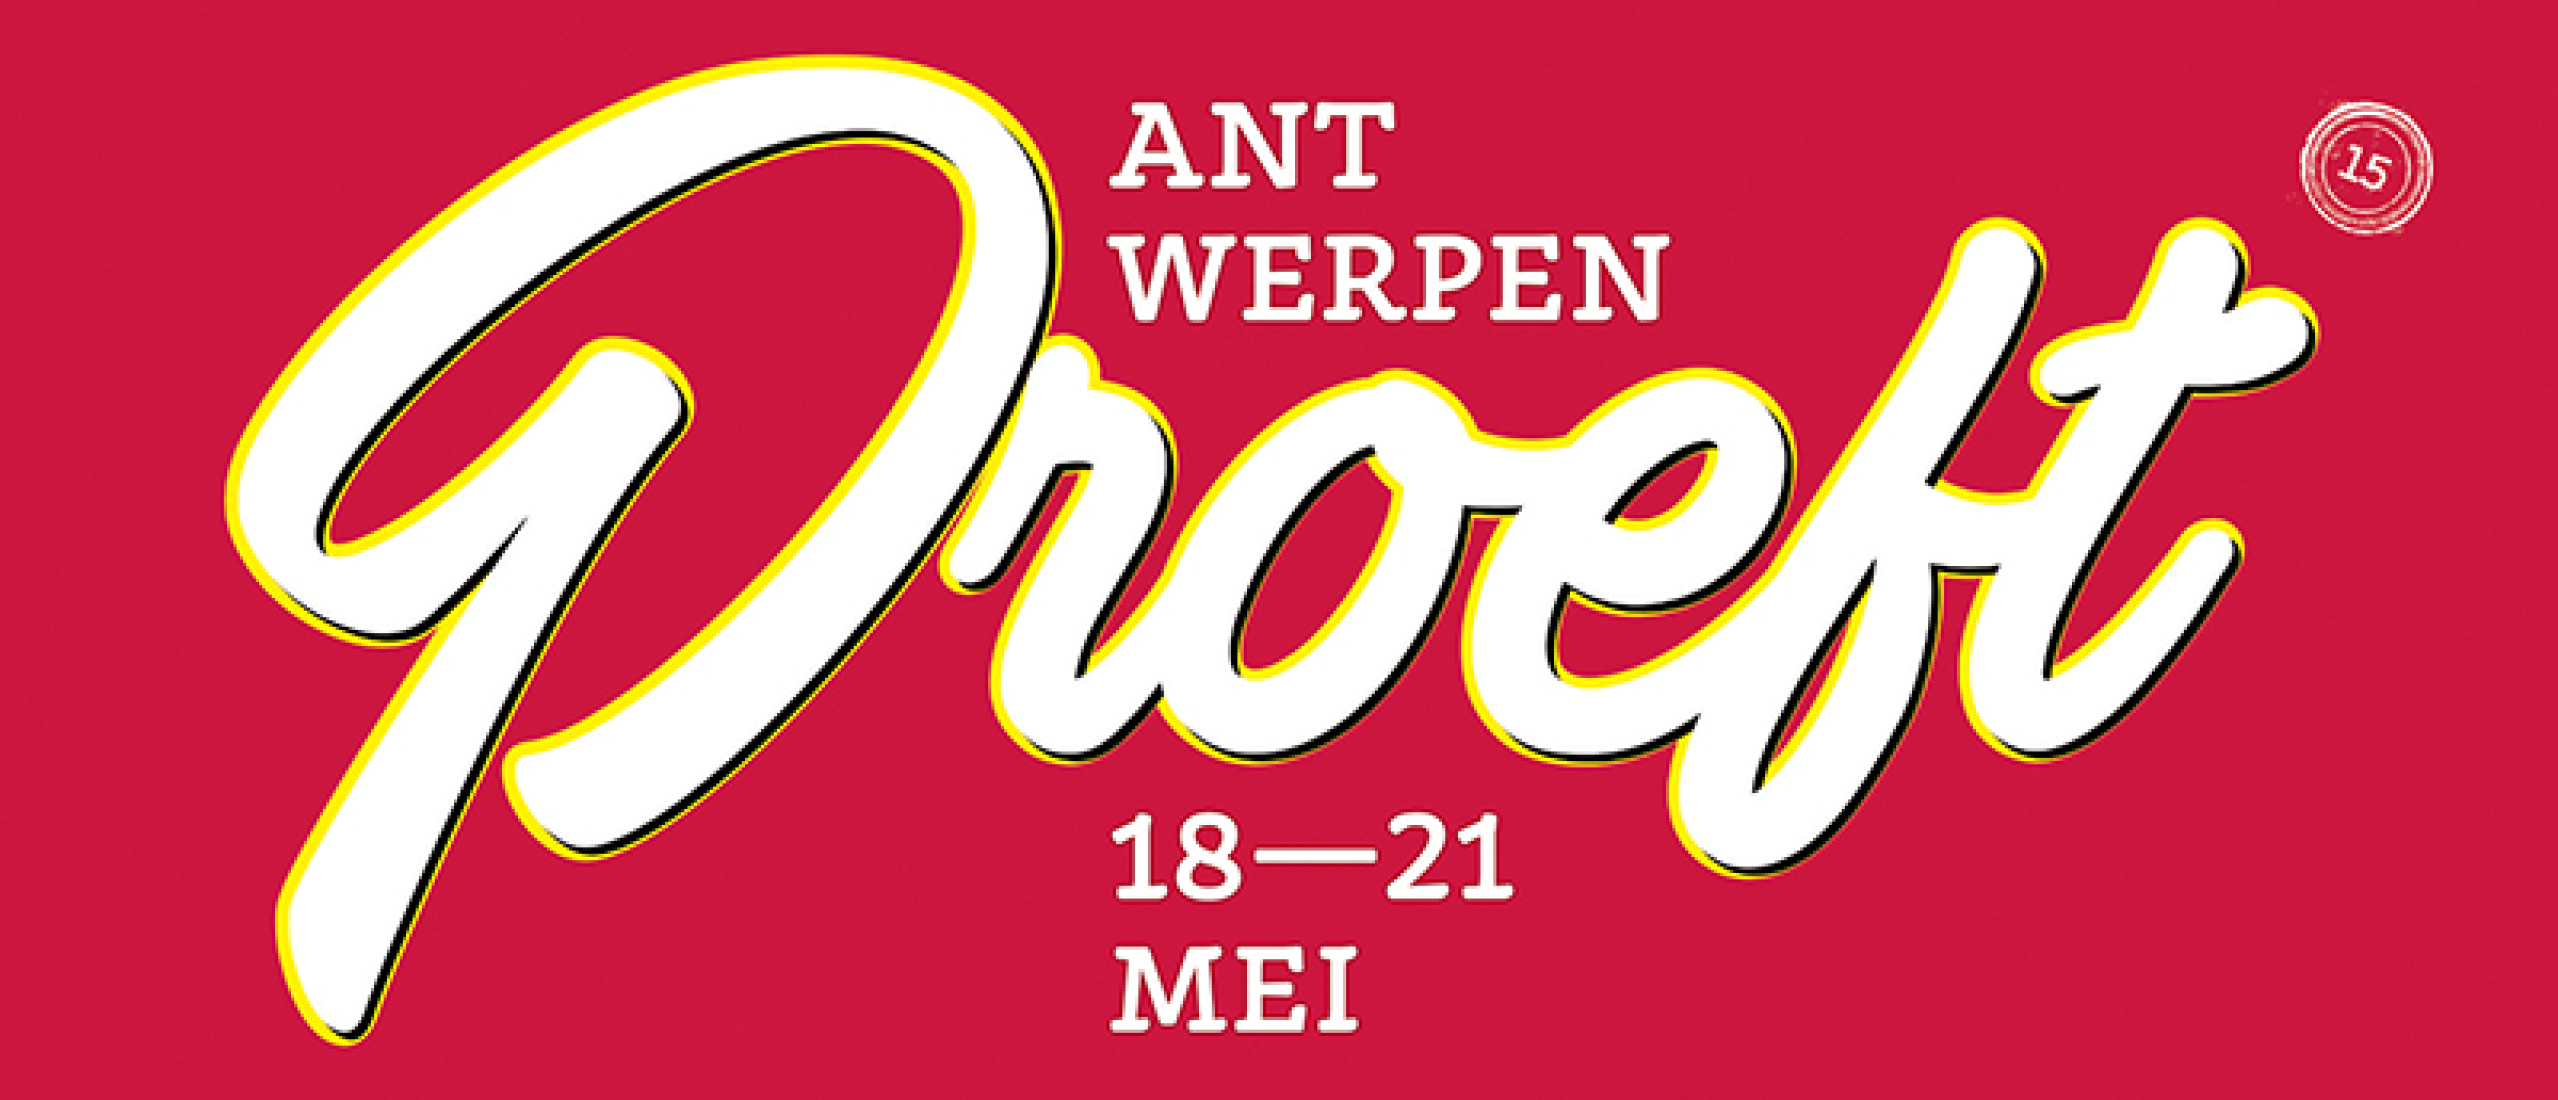 Viki Geunes, Roger van Damme, Wout Bru ... Kom als eerste alle chefs en restaurants van Antwerpen Proeft 18—21 MEI te weten